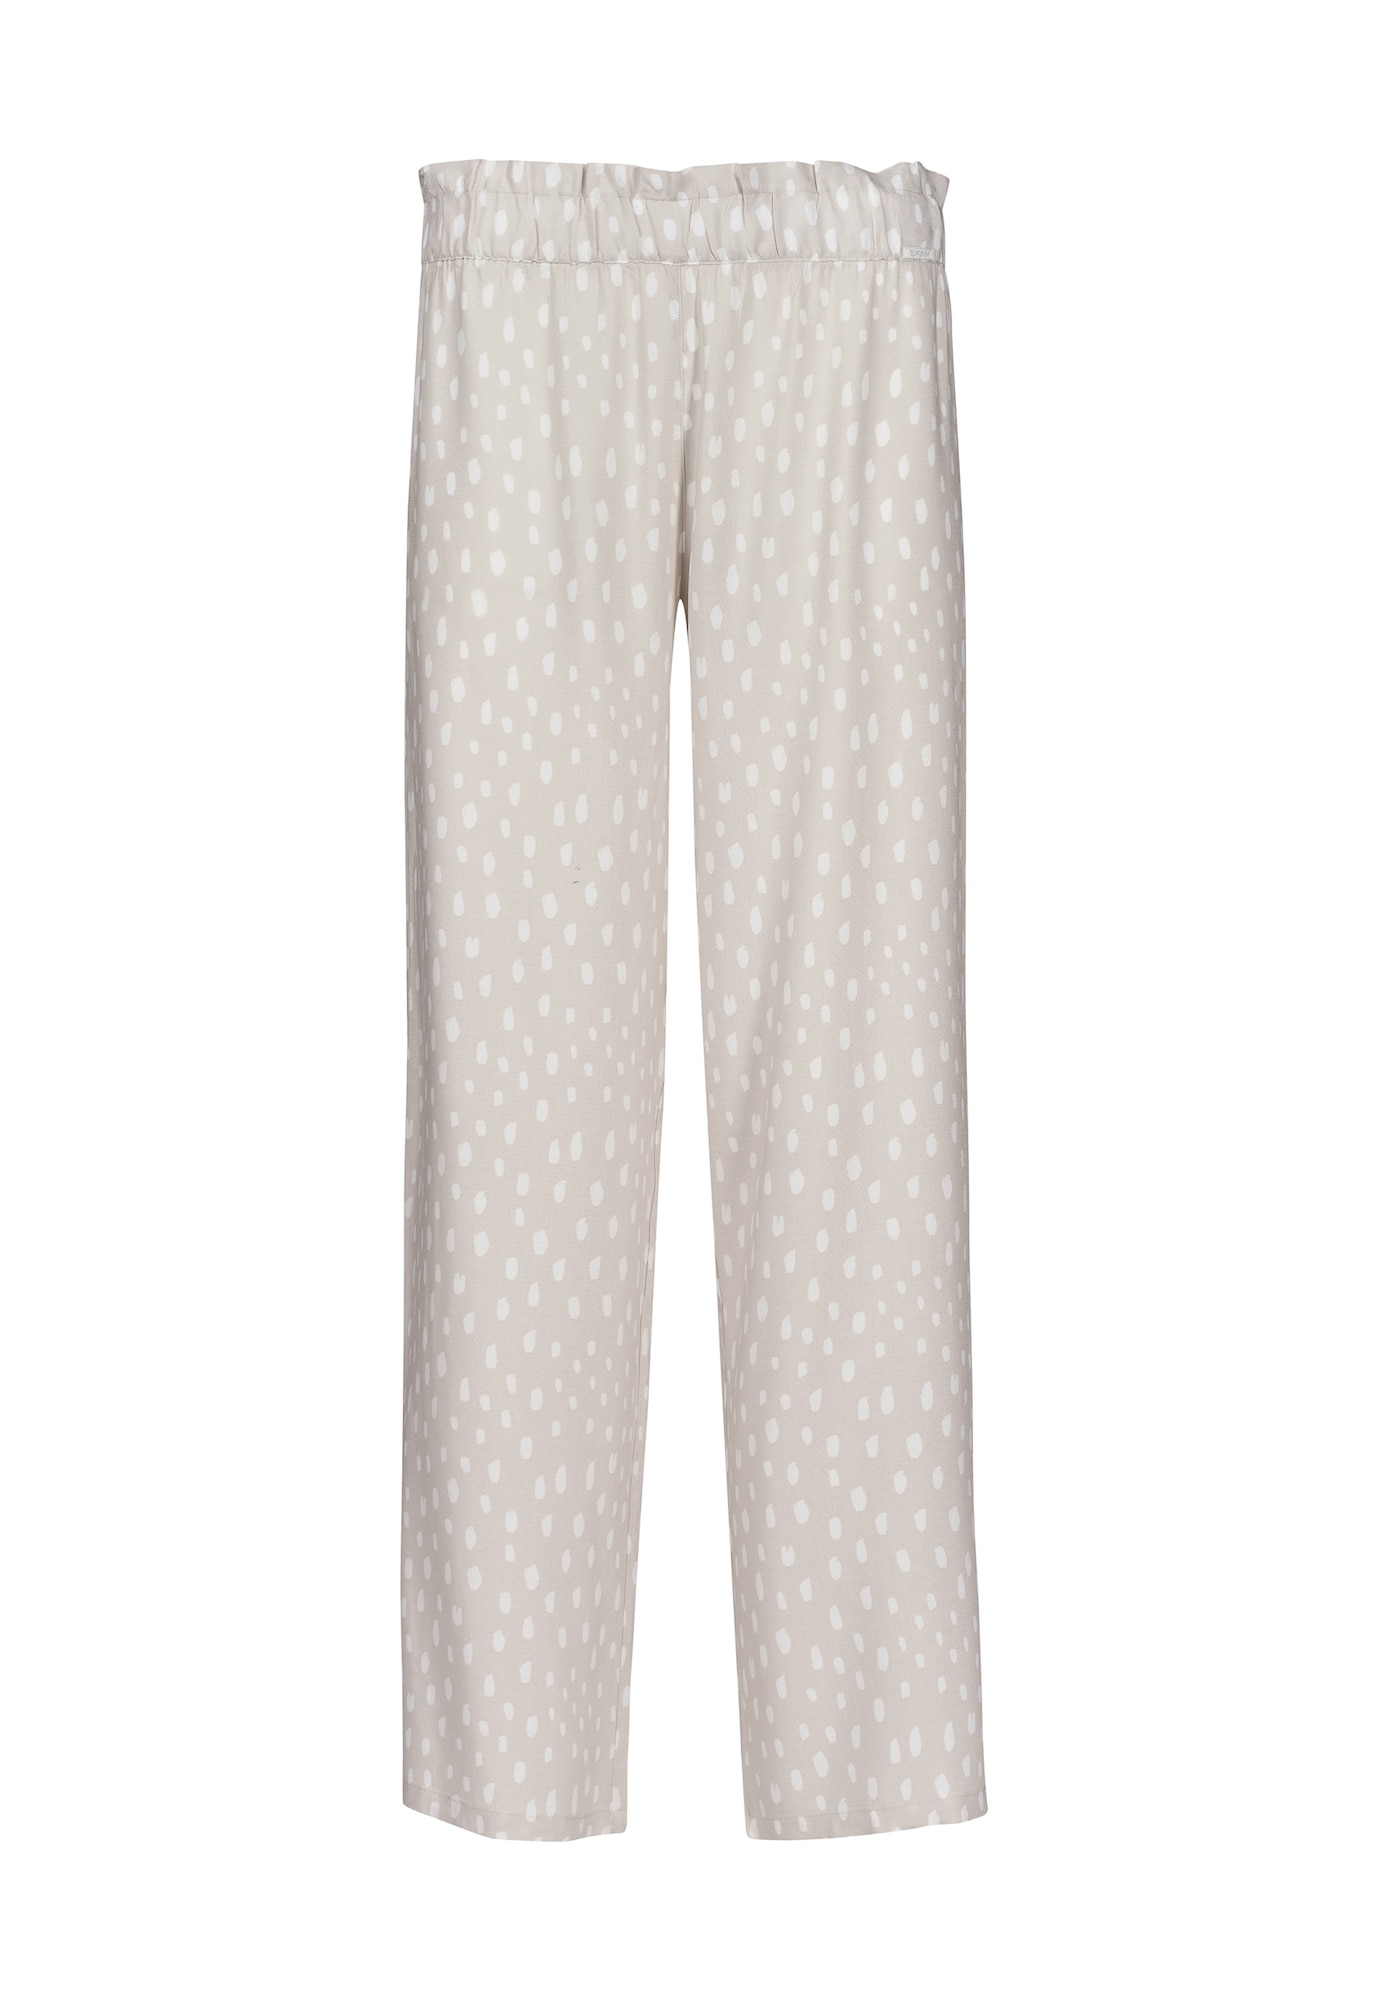 Skiny Pizsama nadrágok  ezüstszürke / fehér